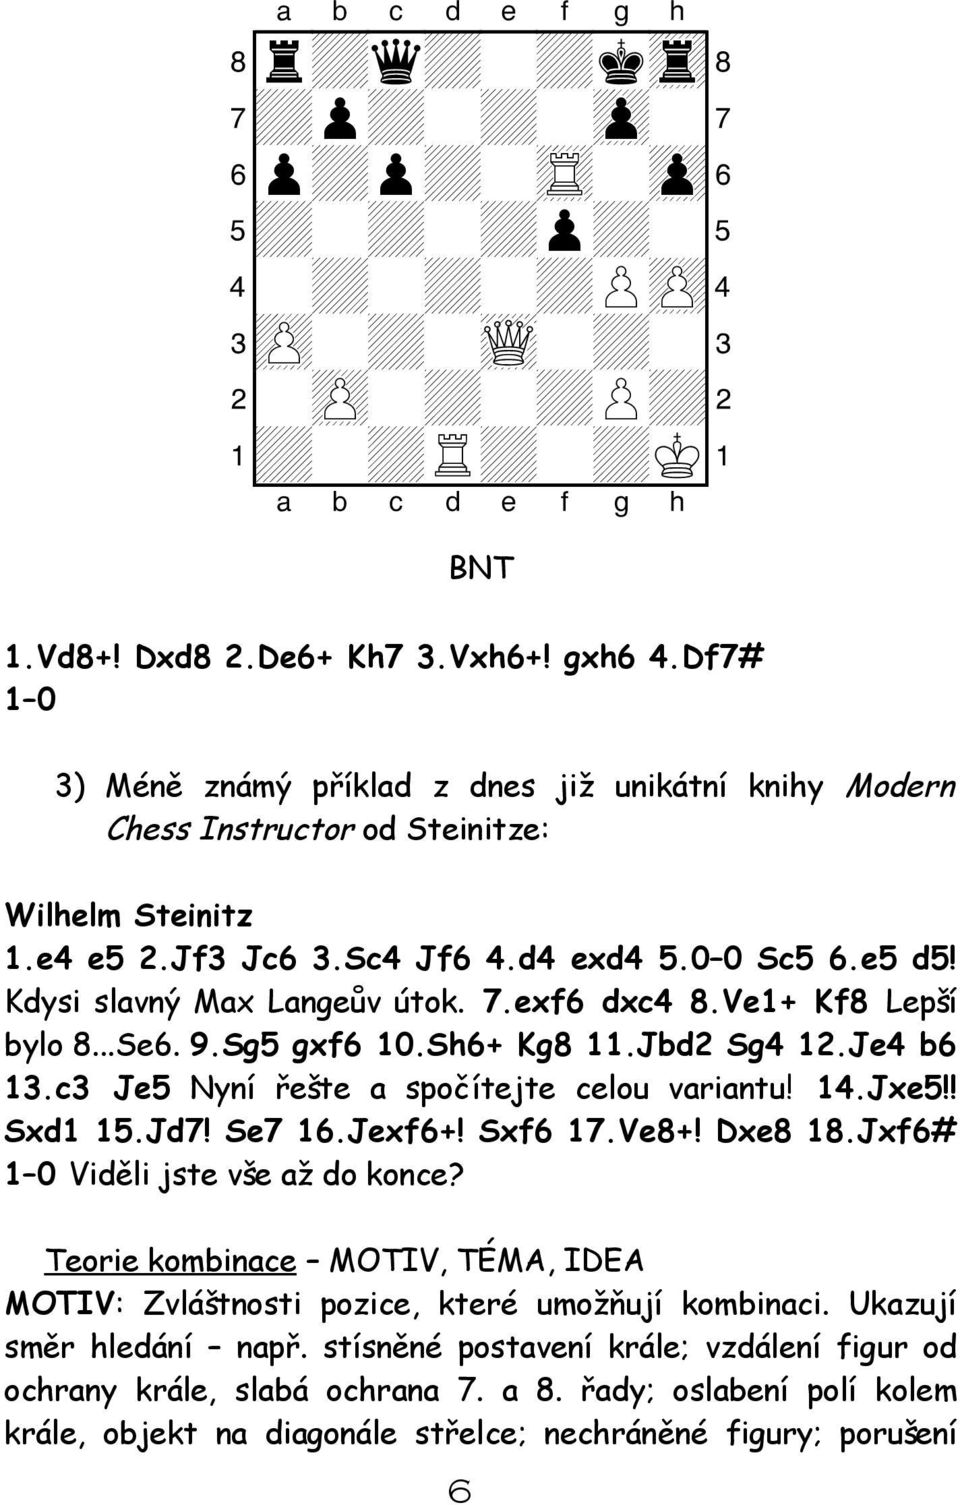 exf6 dxc4 8.Ve1+ Kf8 Lepší bylo 8...Se6. 9.Sg5 gxf6 10.Sh6+ Kg8 11.Jbd2 Sg4 12.Je4 b6 13.c3 Je5 Nyní řešte a spočítejte celou variantu! 14.Jxe5!! Sxd1 15.Jd7! Se7 16.Jexf6+! Sxf6 17.Ve8+! Dxe8 18.